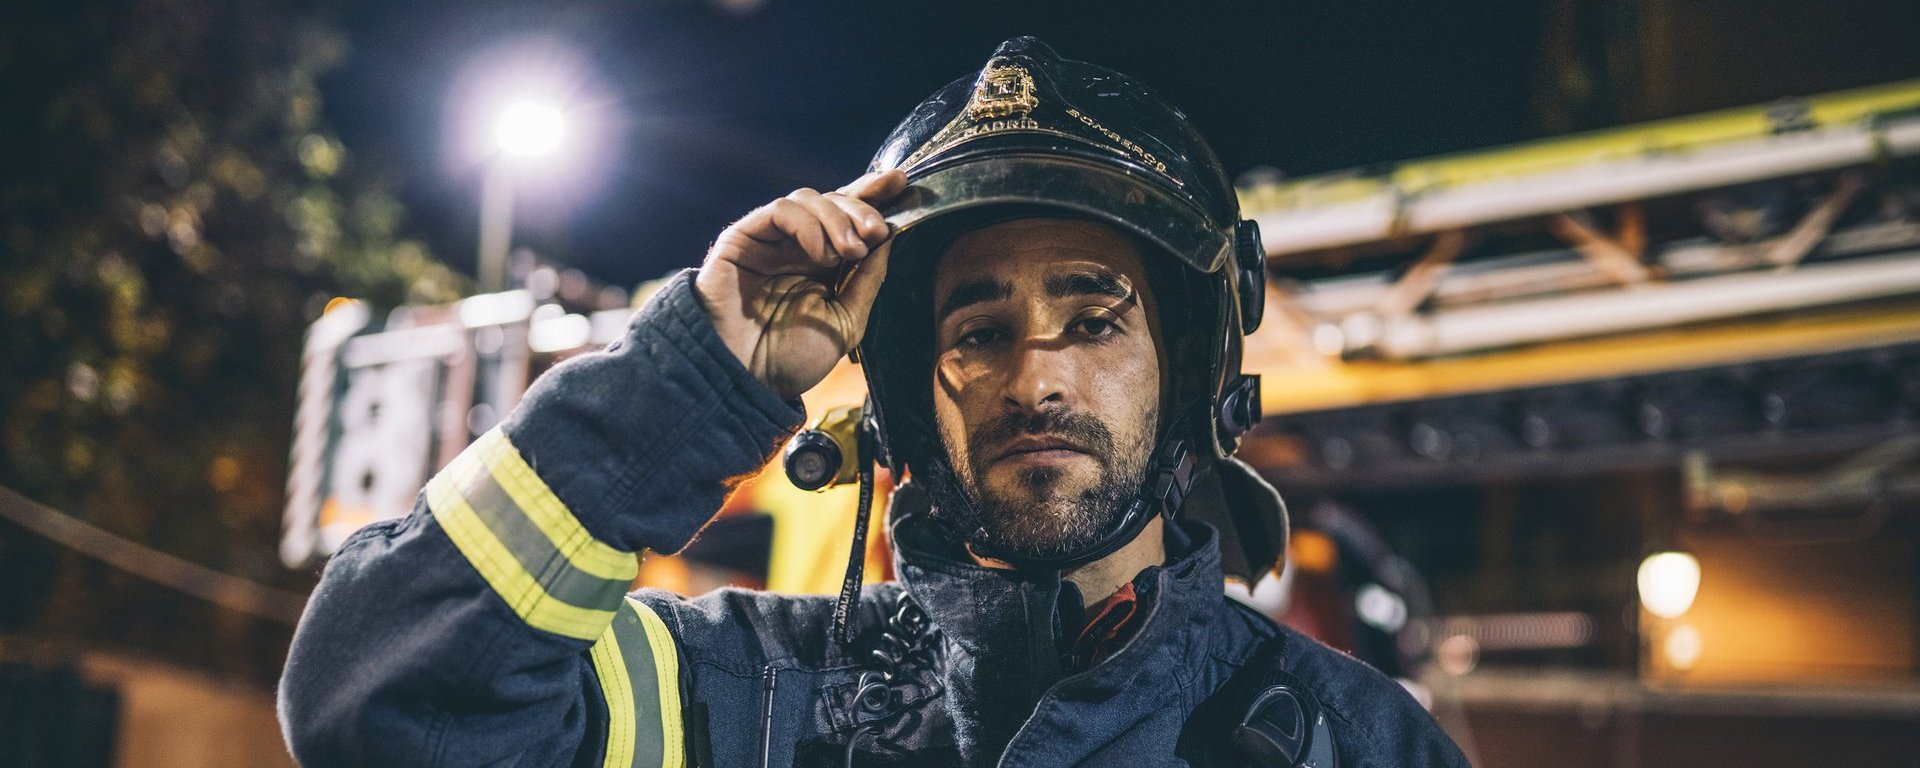 Frontalaufnahme eines Feuerwehrmanns in Einsatzklamotten, der in die Kamera blickt und sich an das Visier seines Helmes fasst. Im Hintergrund ist ein Feuerwehrlagen mit Drehleiter auf dem Dach zu sehen.